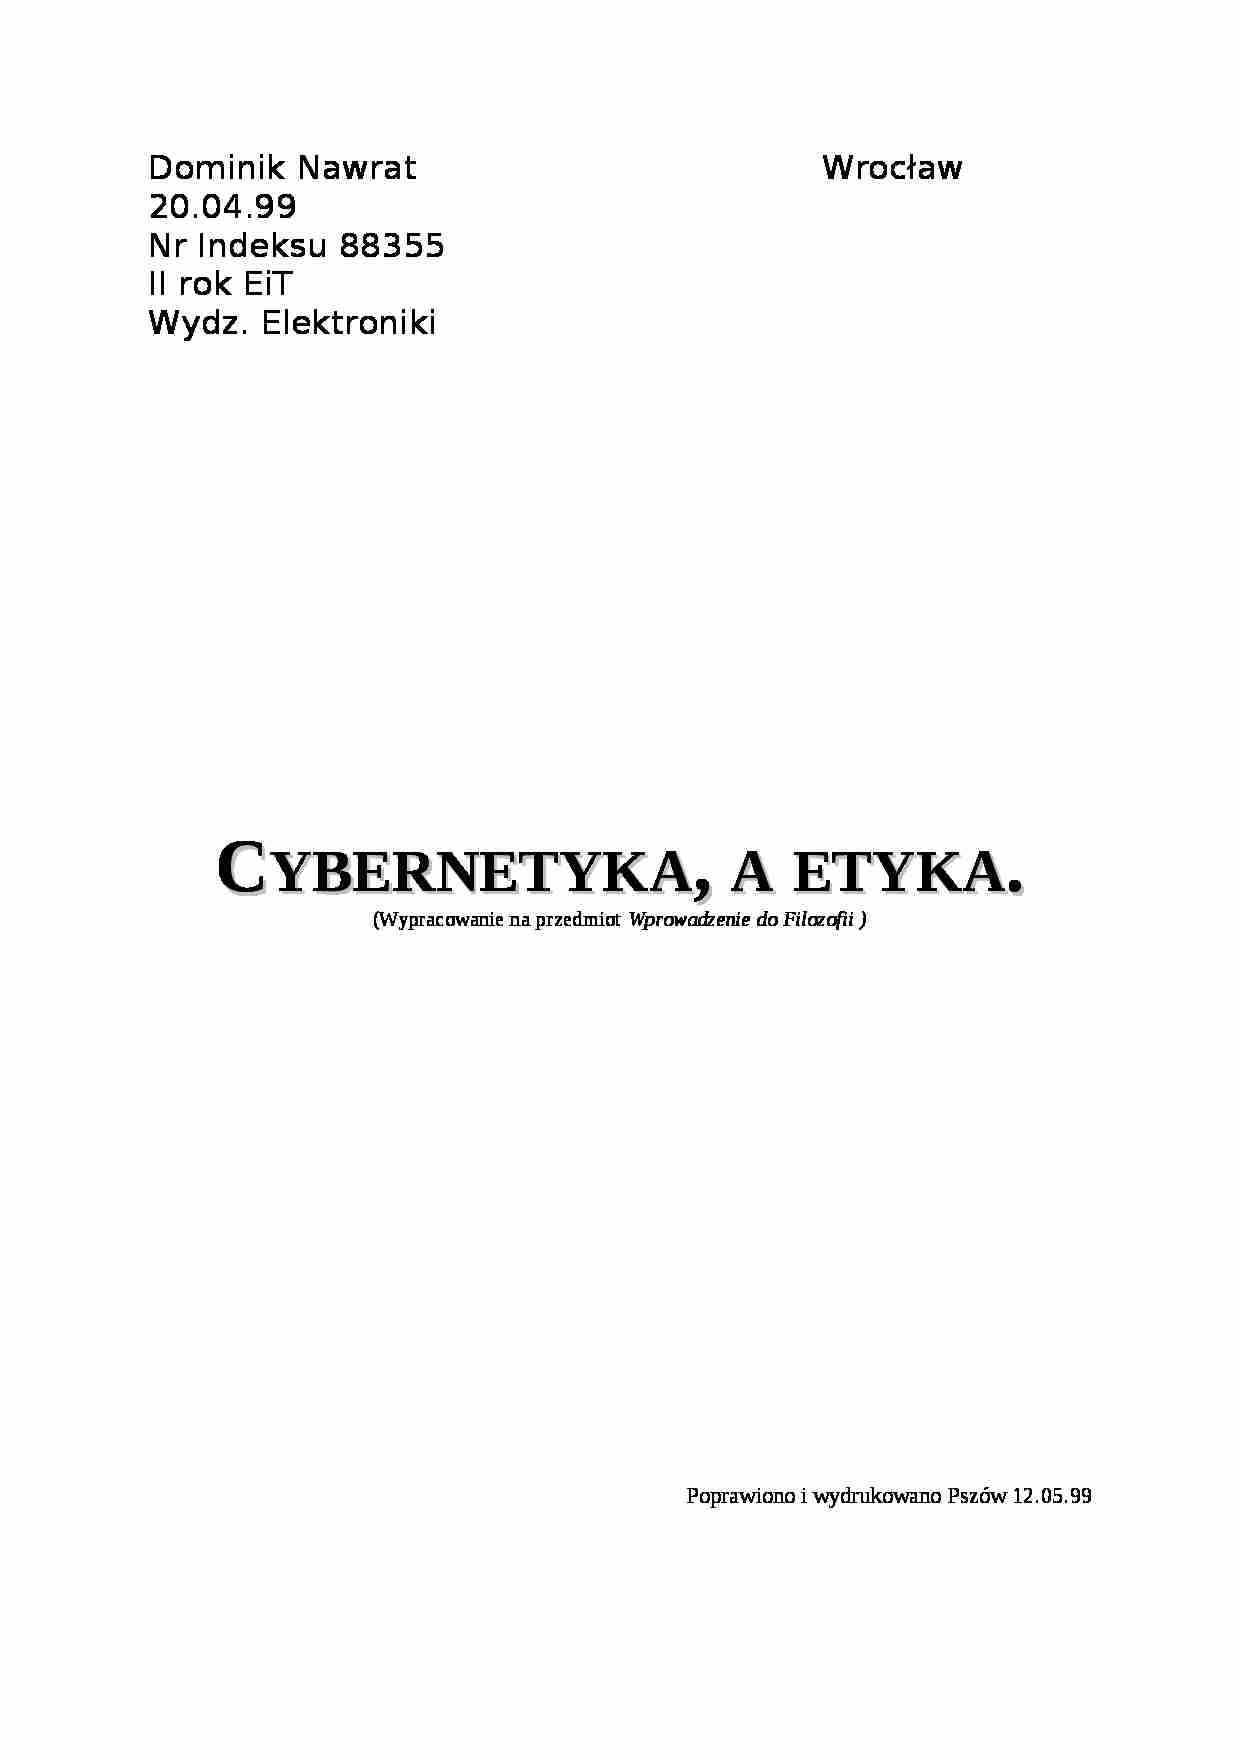 Wypracowanie z filozofii: cybernetyka a etyka - strona 1